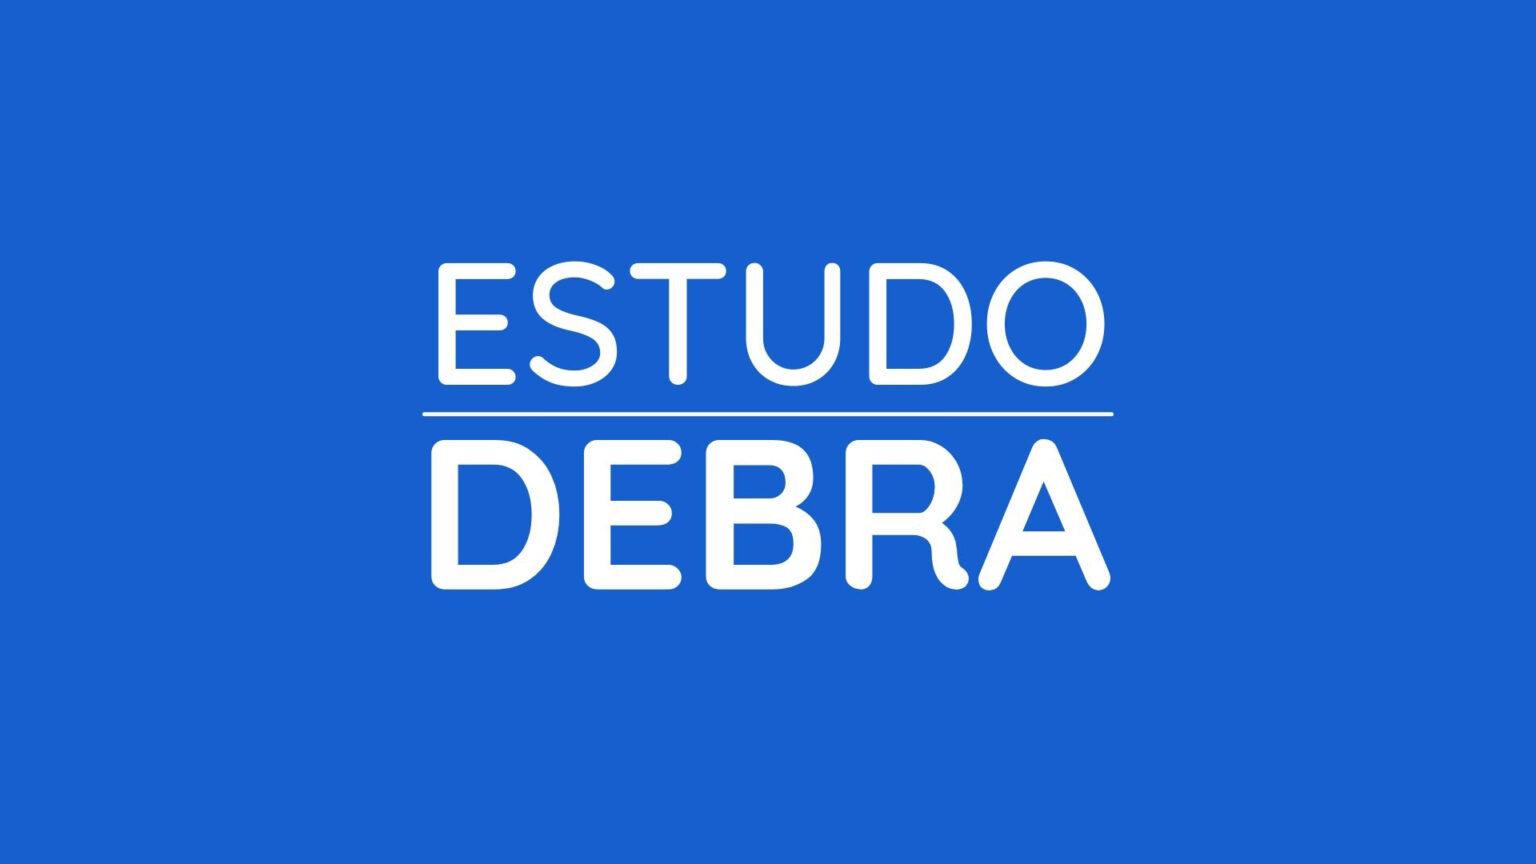 ESTUDO DEBRA | ESTRATÉGIA PARA REDES SOCIAIS